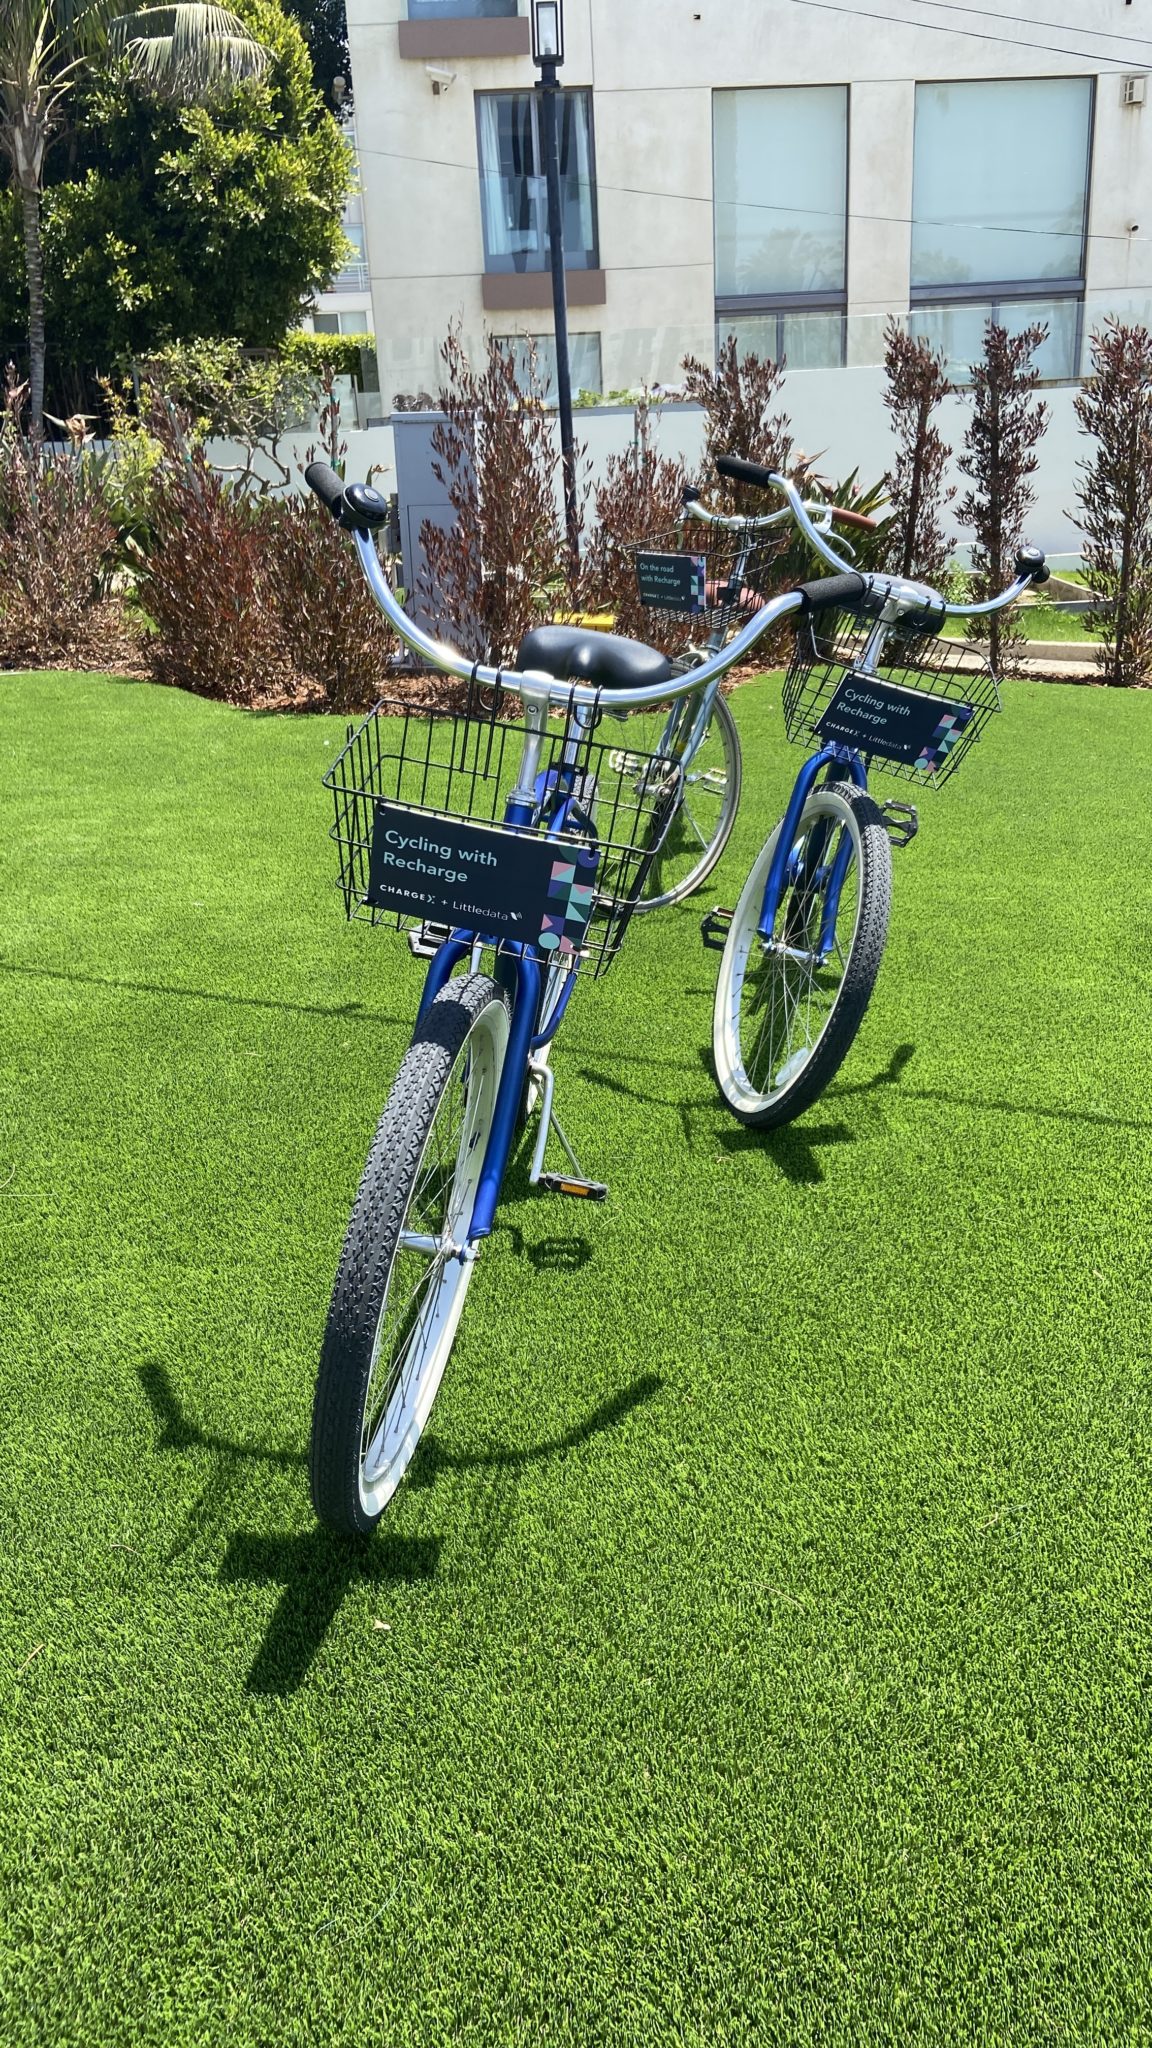 จักรยานสีน้ำเงินสองคันที่มีตราสินค้า ChargeX อยู่บนตะกร้าด้านหน้า ยืนด้วยขาตั้งบนพื้นหญ้าที่พร้อมให้ผู้เข้าร่วมได้ขี่